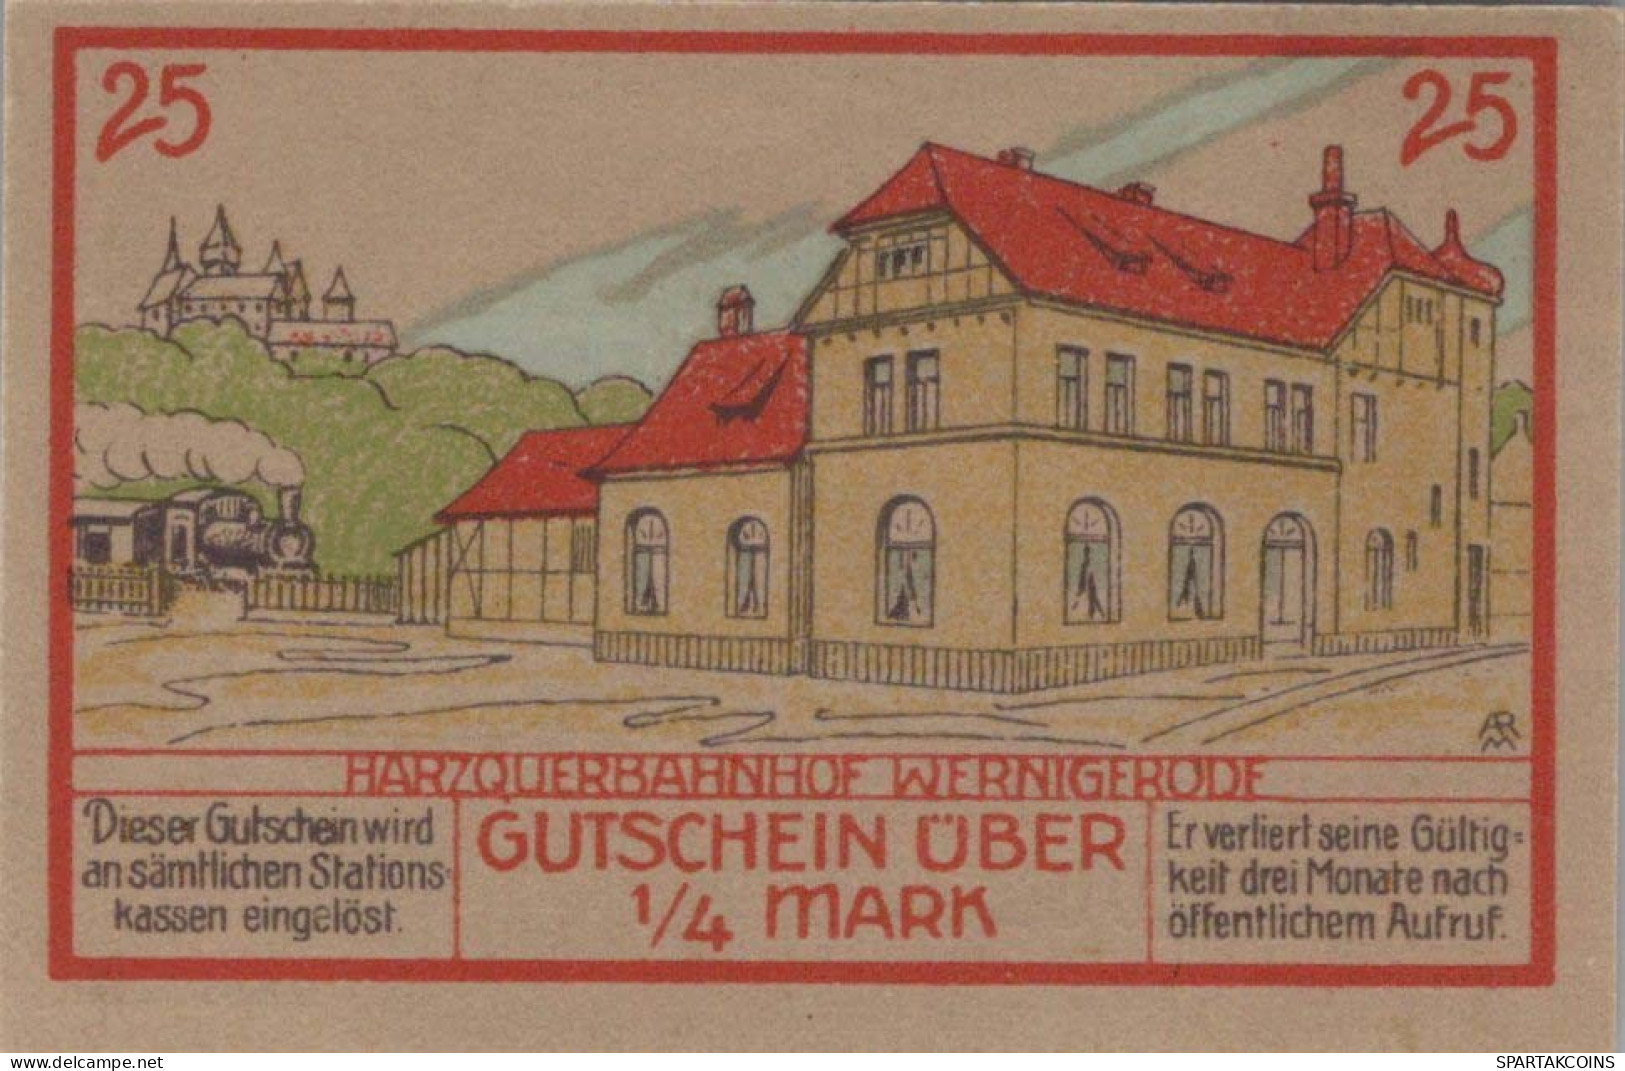 25 PFENNIG 1921 Stadt WERNIGERODE Saxony UNC DEUTSCHLAND Notgeld Banknote #PH208 - [11] Local Banknote Issues